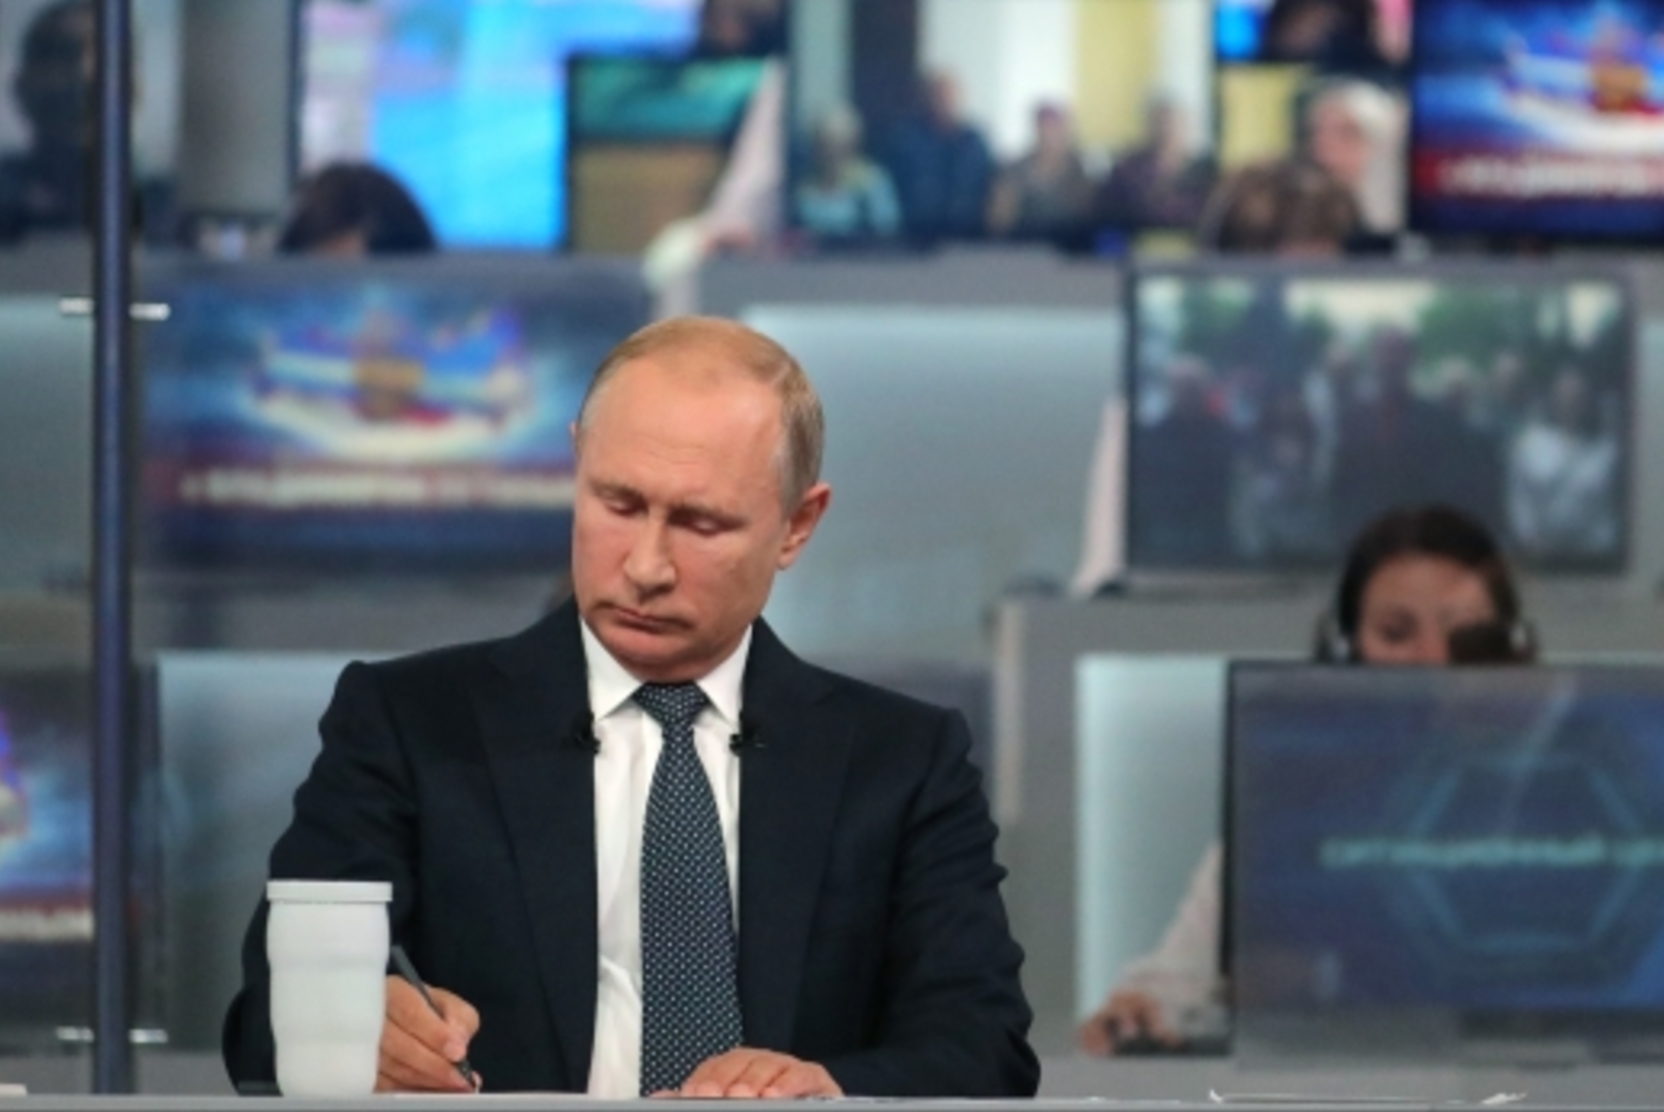 Call-центры начали прием вопросов перед прямой линией с Путиным